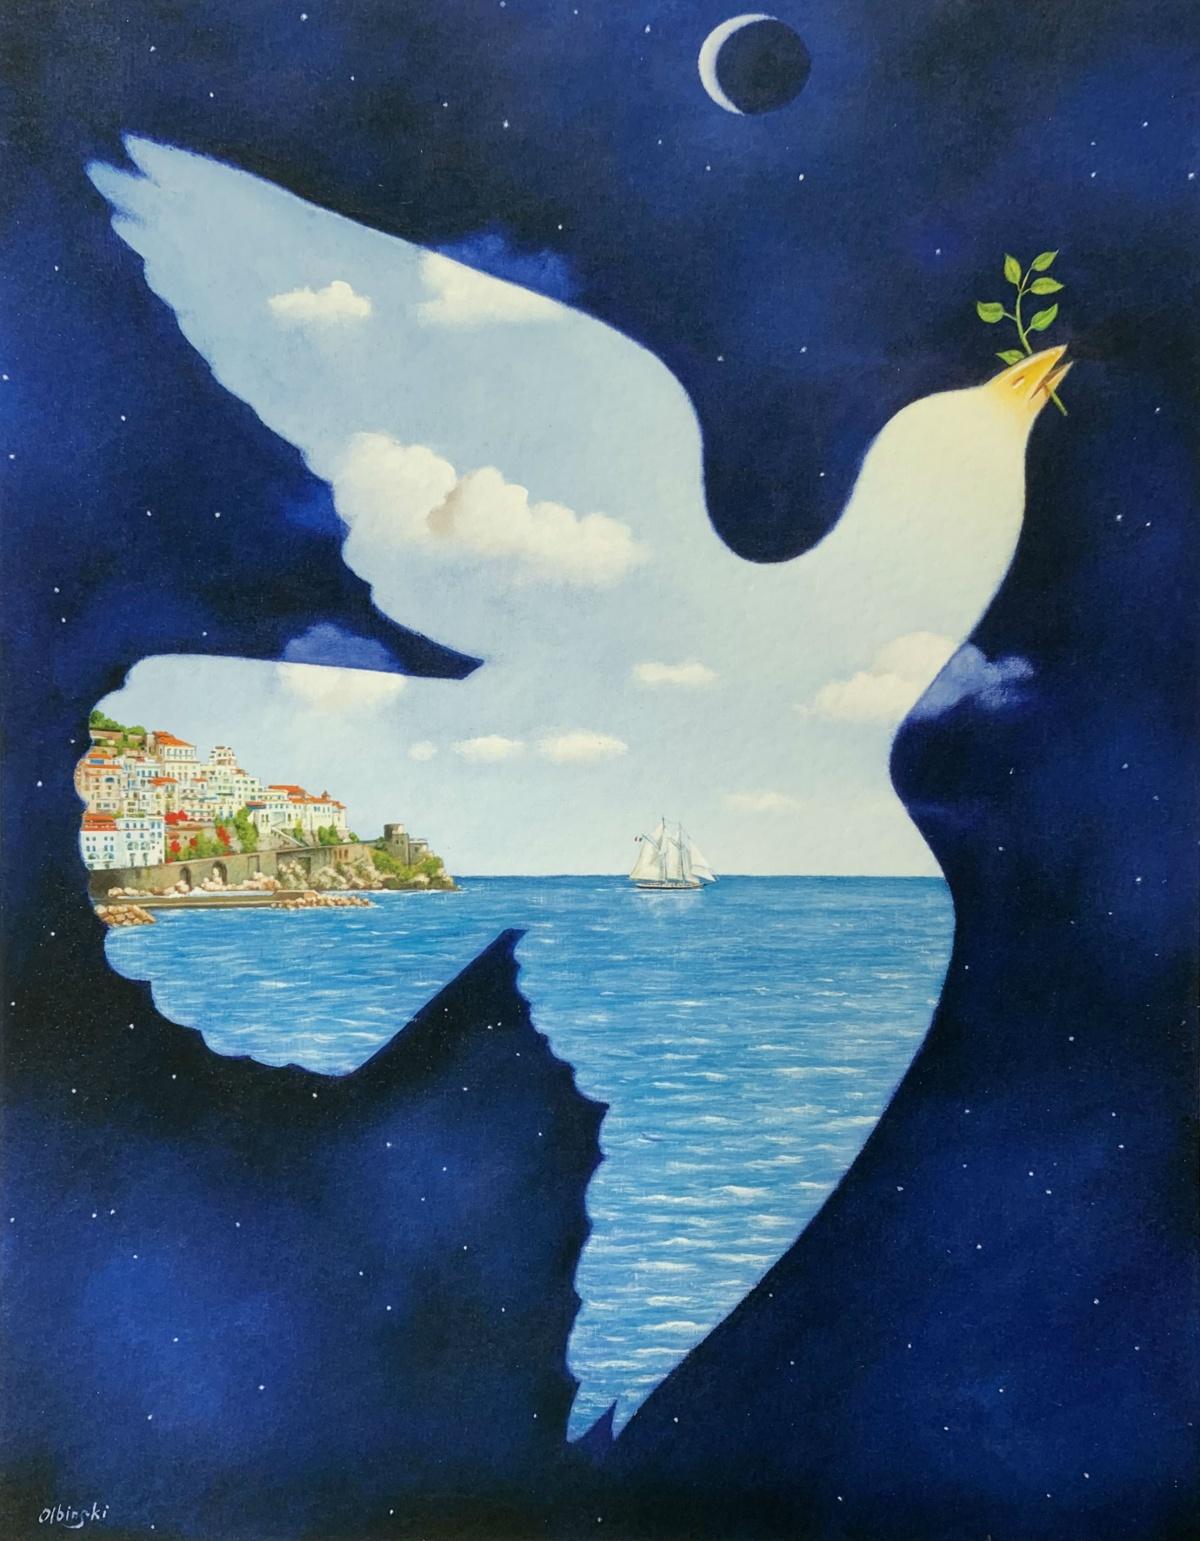 Dove of peace - Impression surréaliste, édition limitée, artiste polonais établi